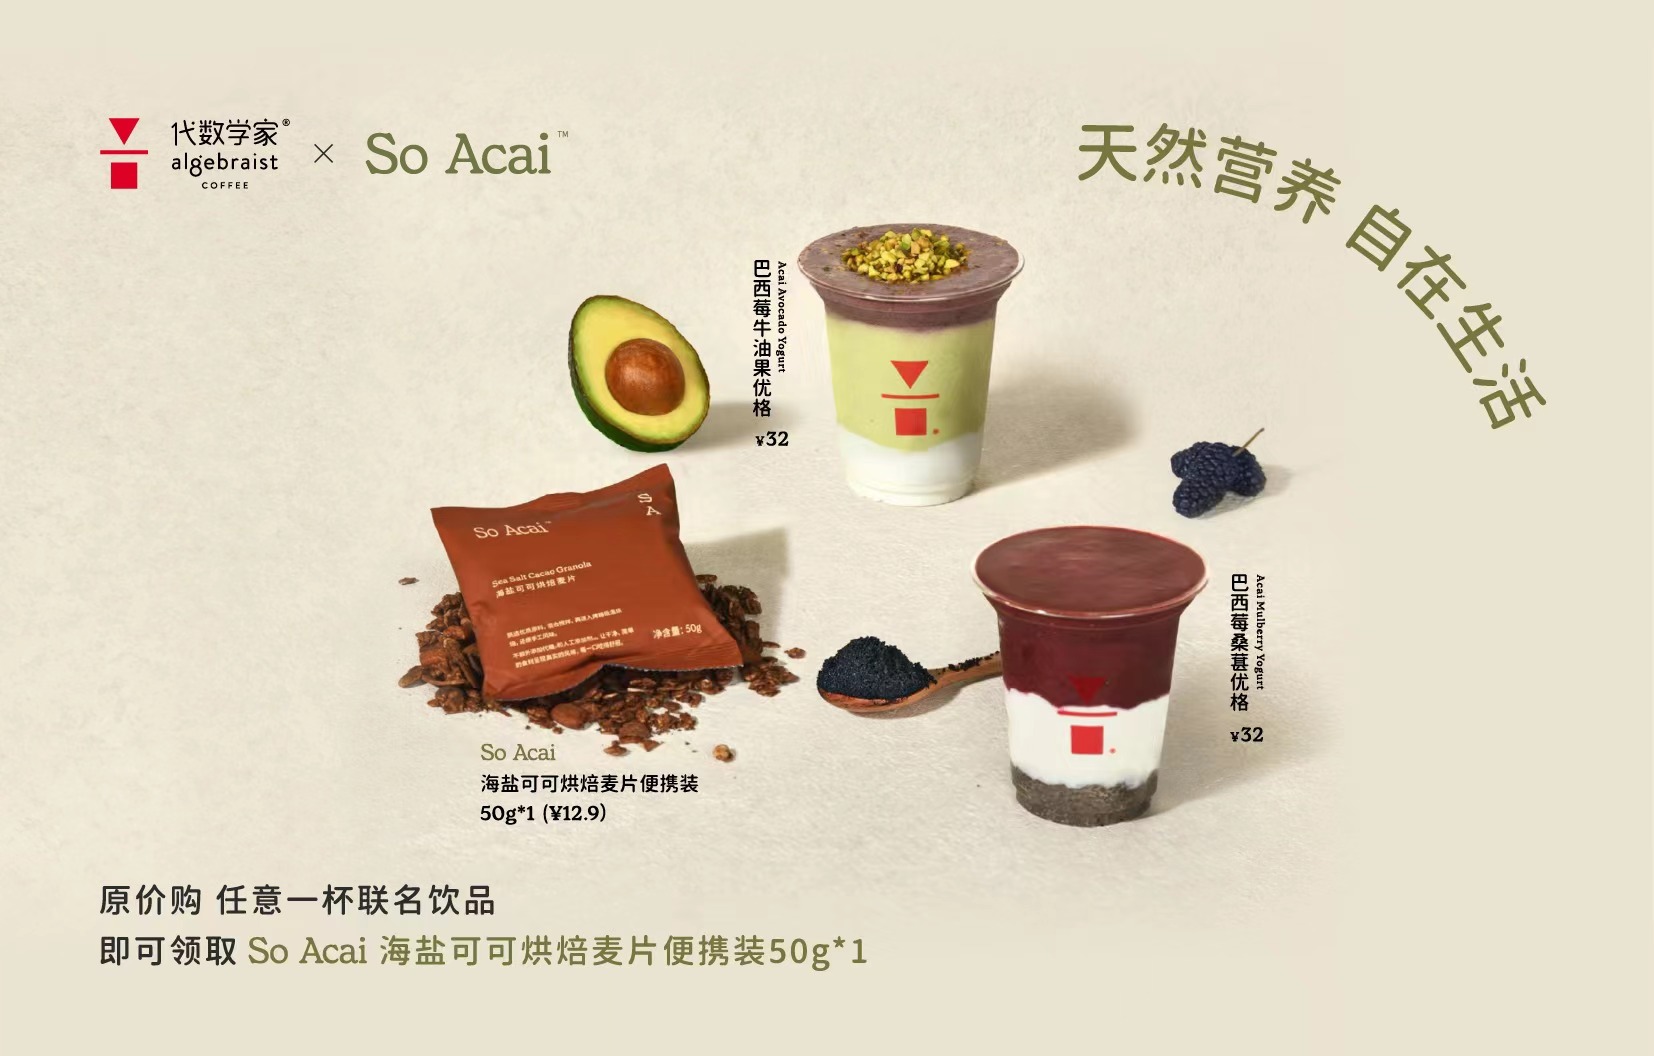 「代数学家」联名「So Acai」推出巴西莓粉系列产品